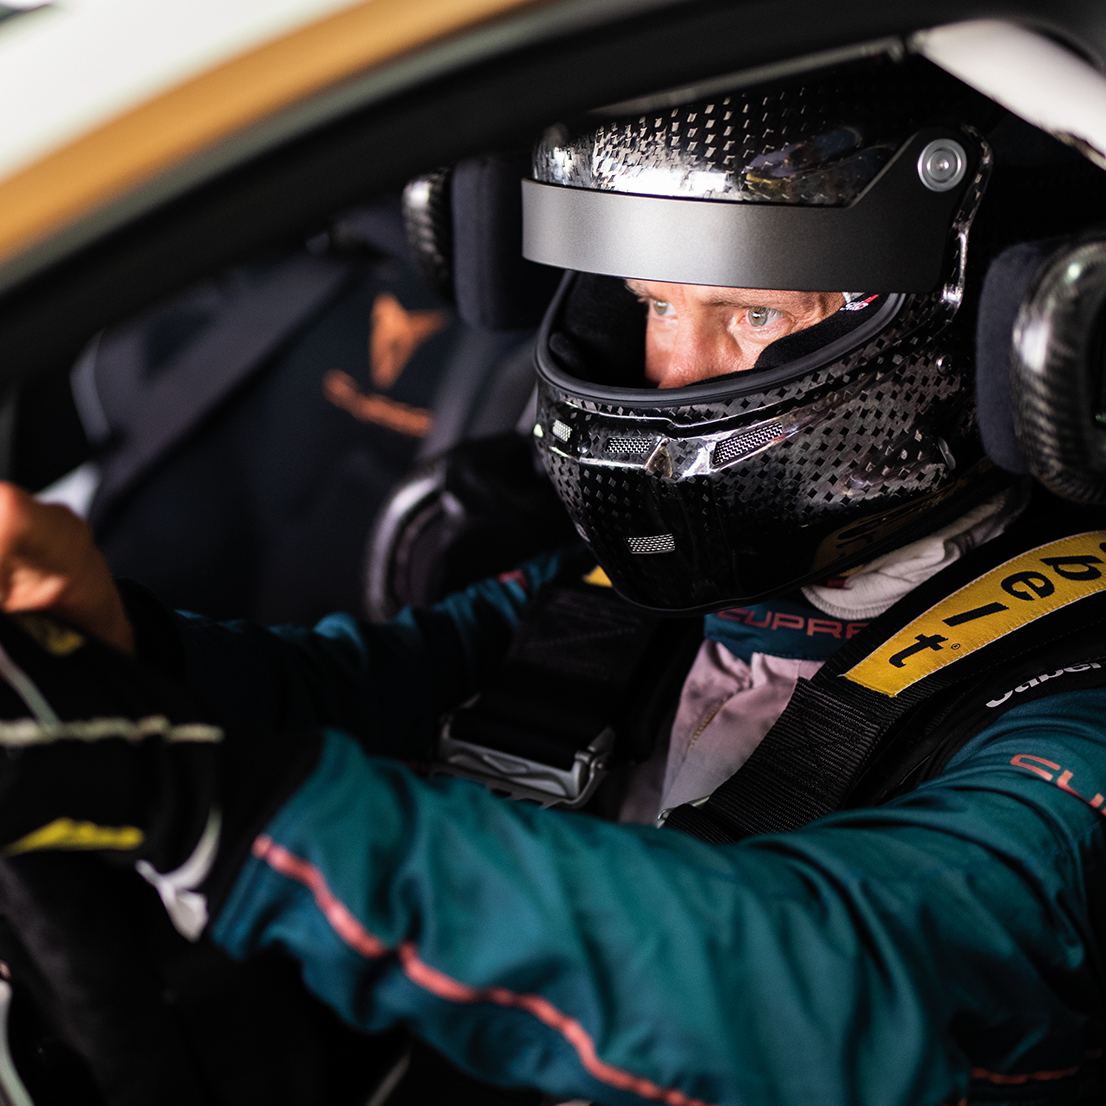 Mattias Ekström wearing a helmet in the driver's seat